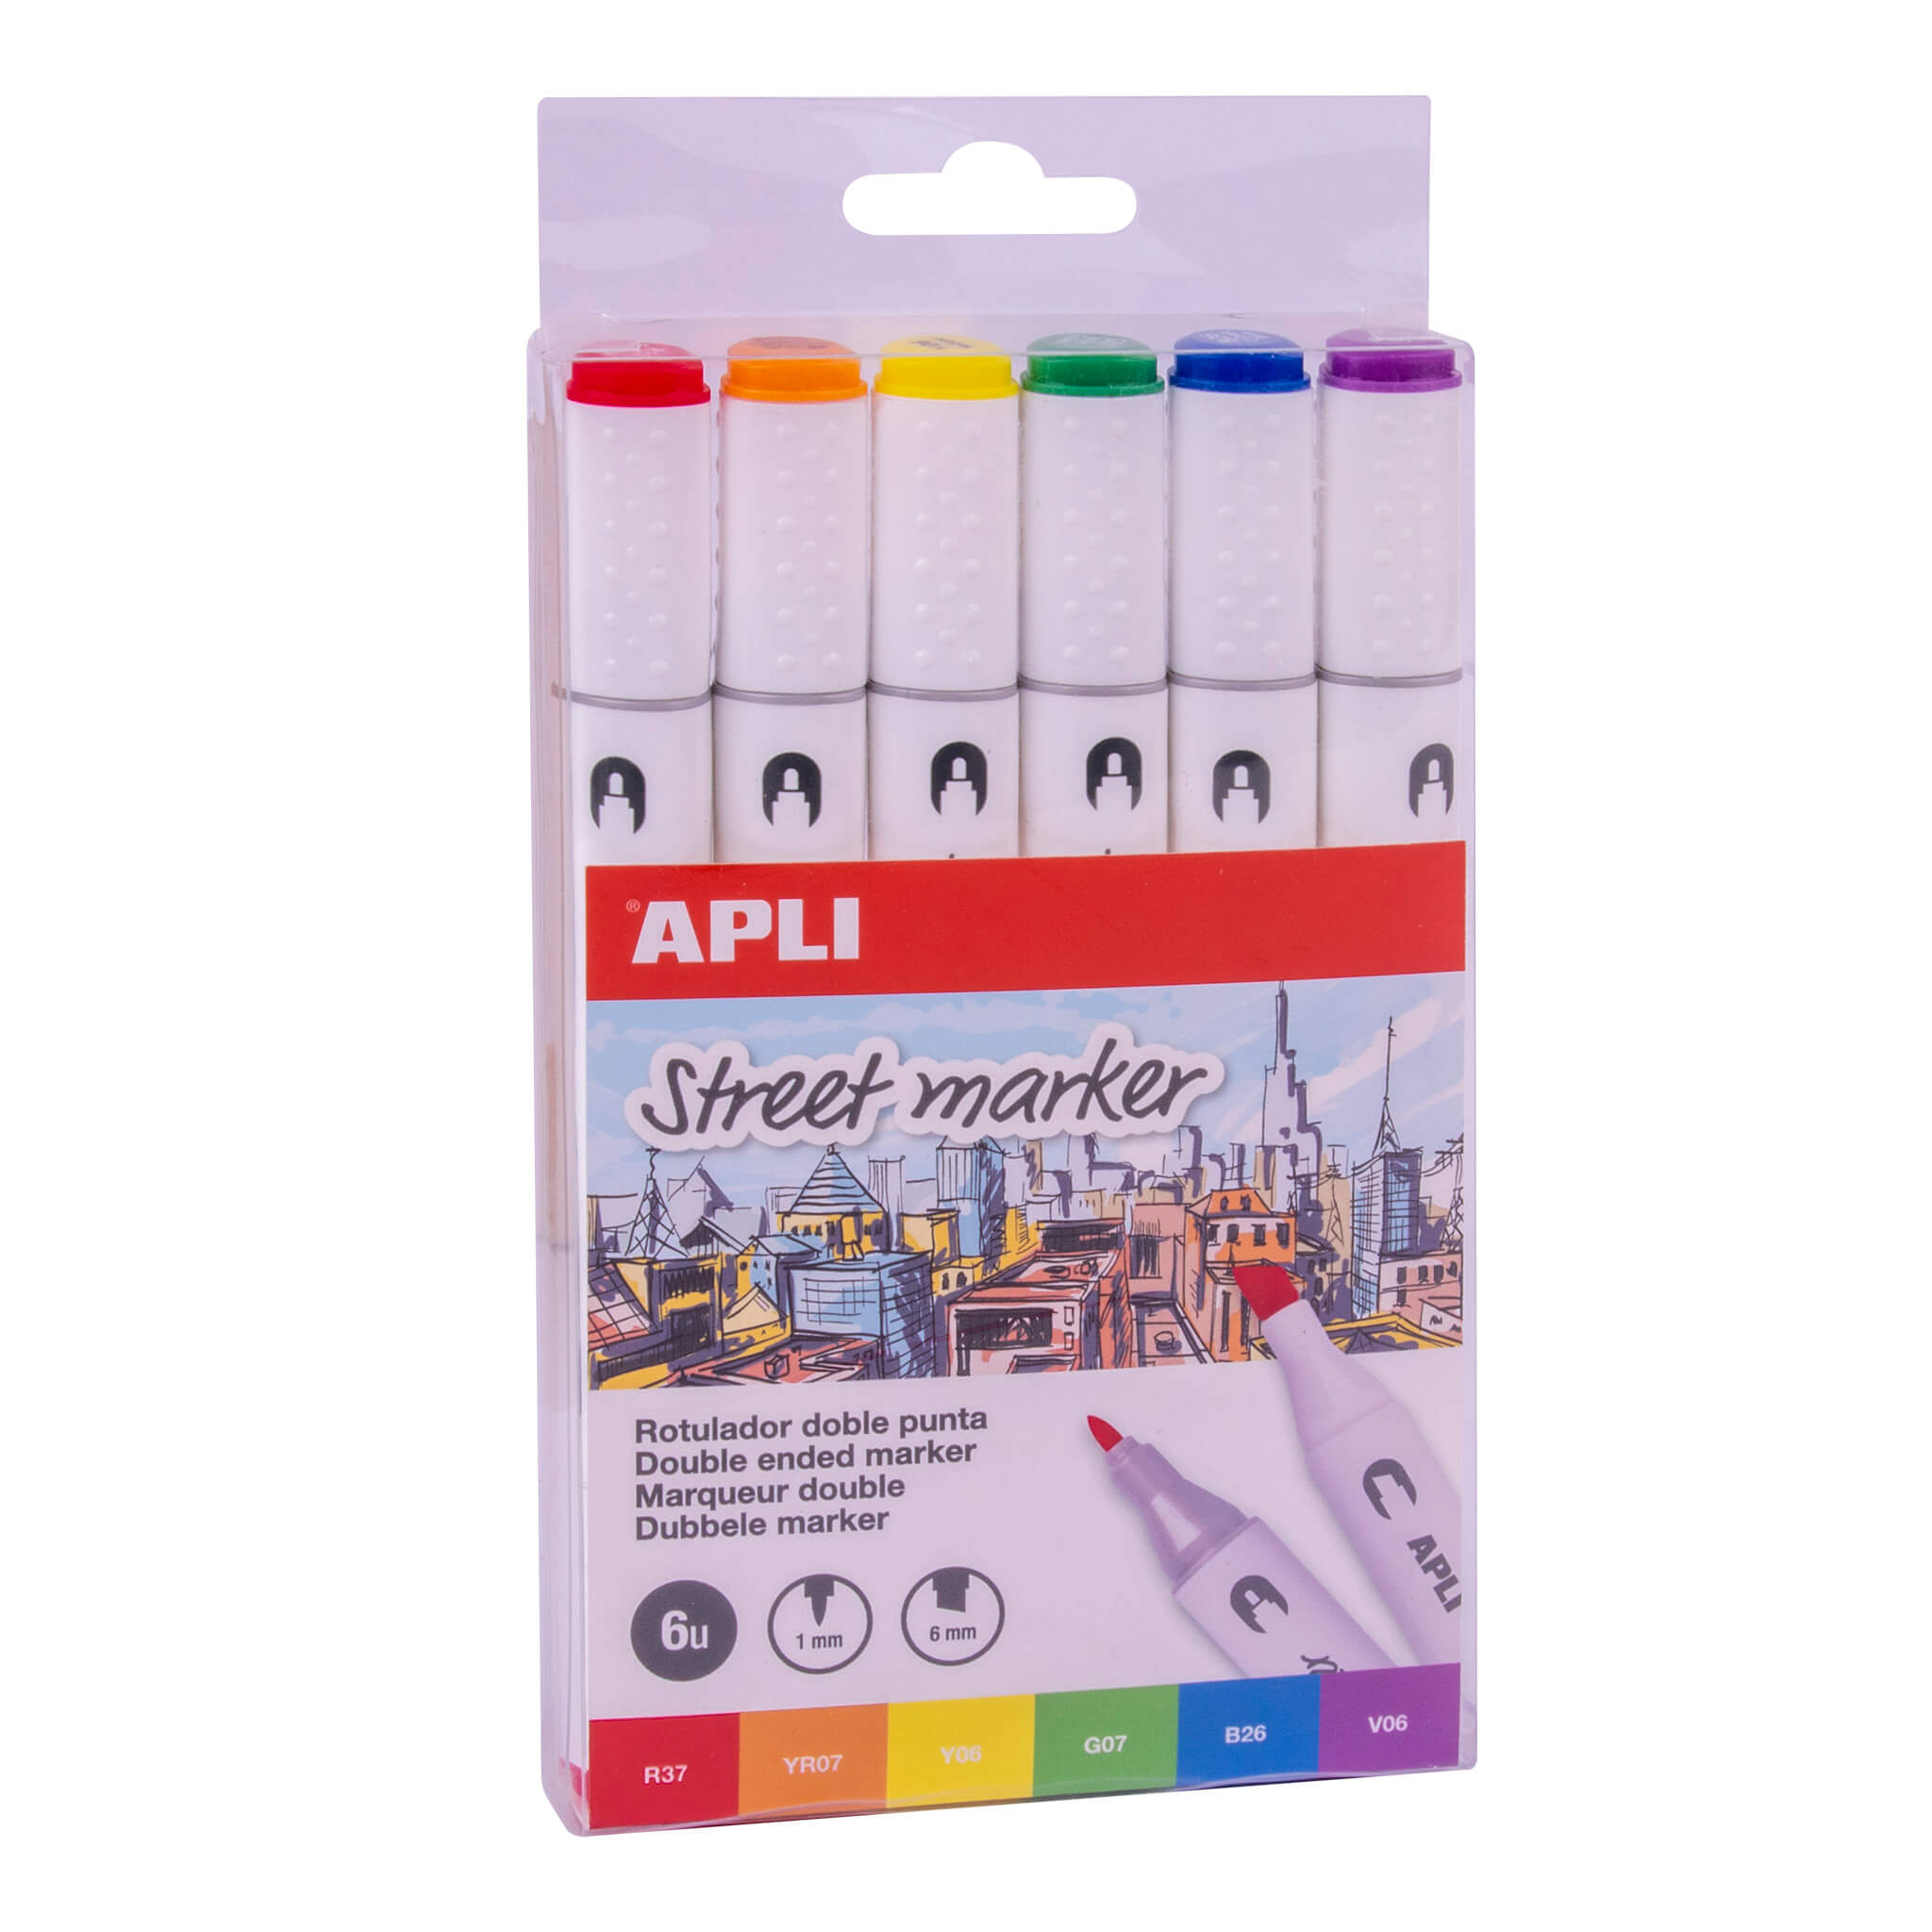 Apli Street Markers Rotuladores de Doble Punta - Puntas de 1mm y